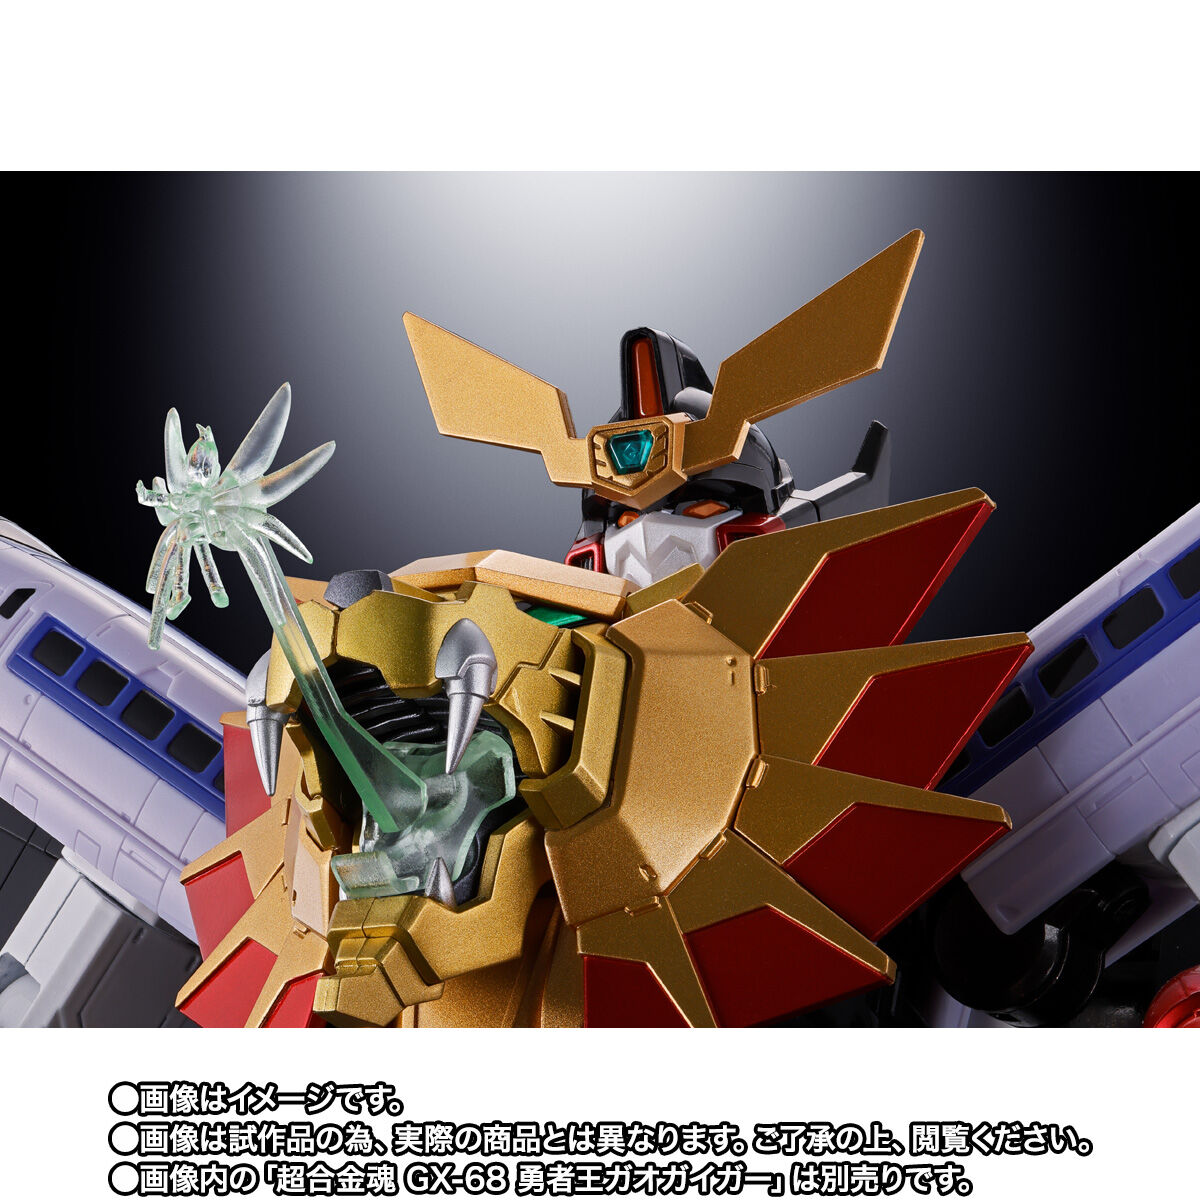 勇者王ガオガイガーFINAL「超合金魂 GX-112 レプリガイガー＆オプションセット」のフィギュア画像